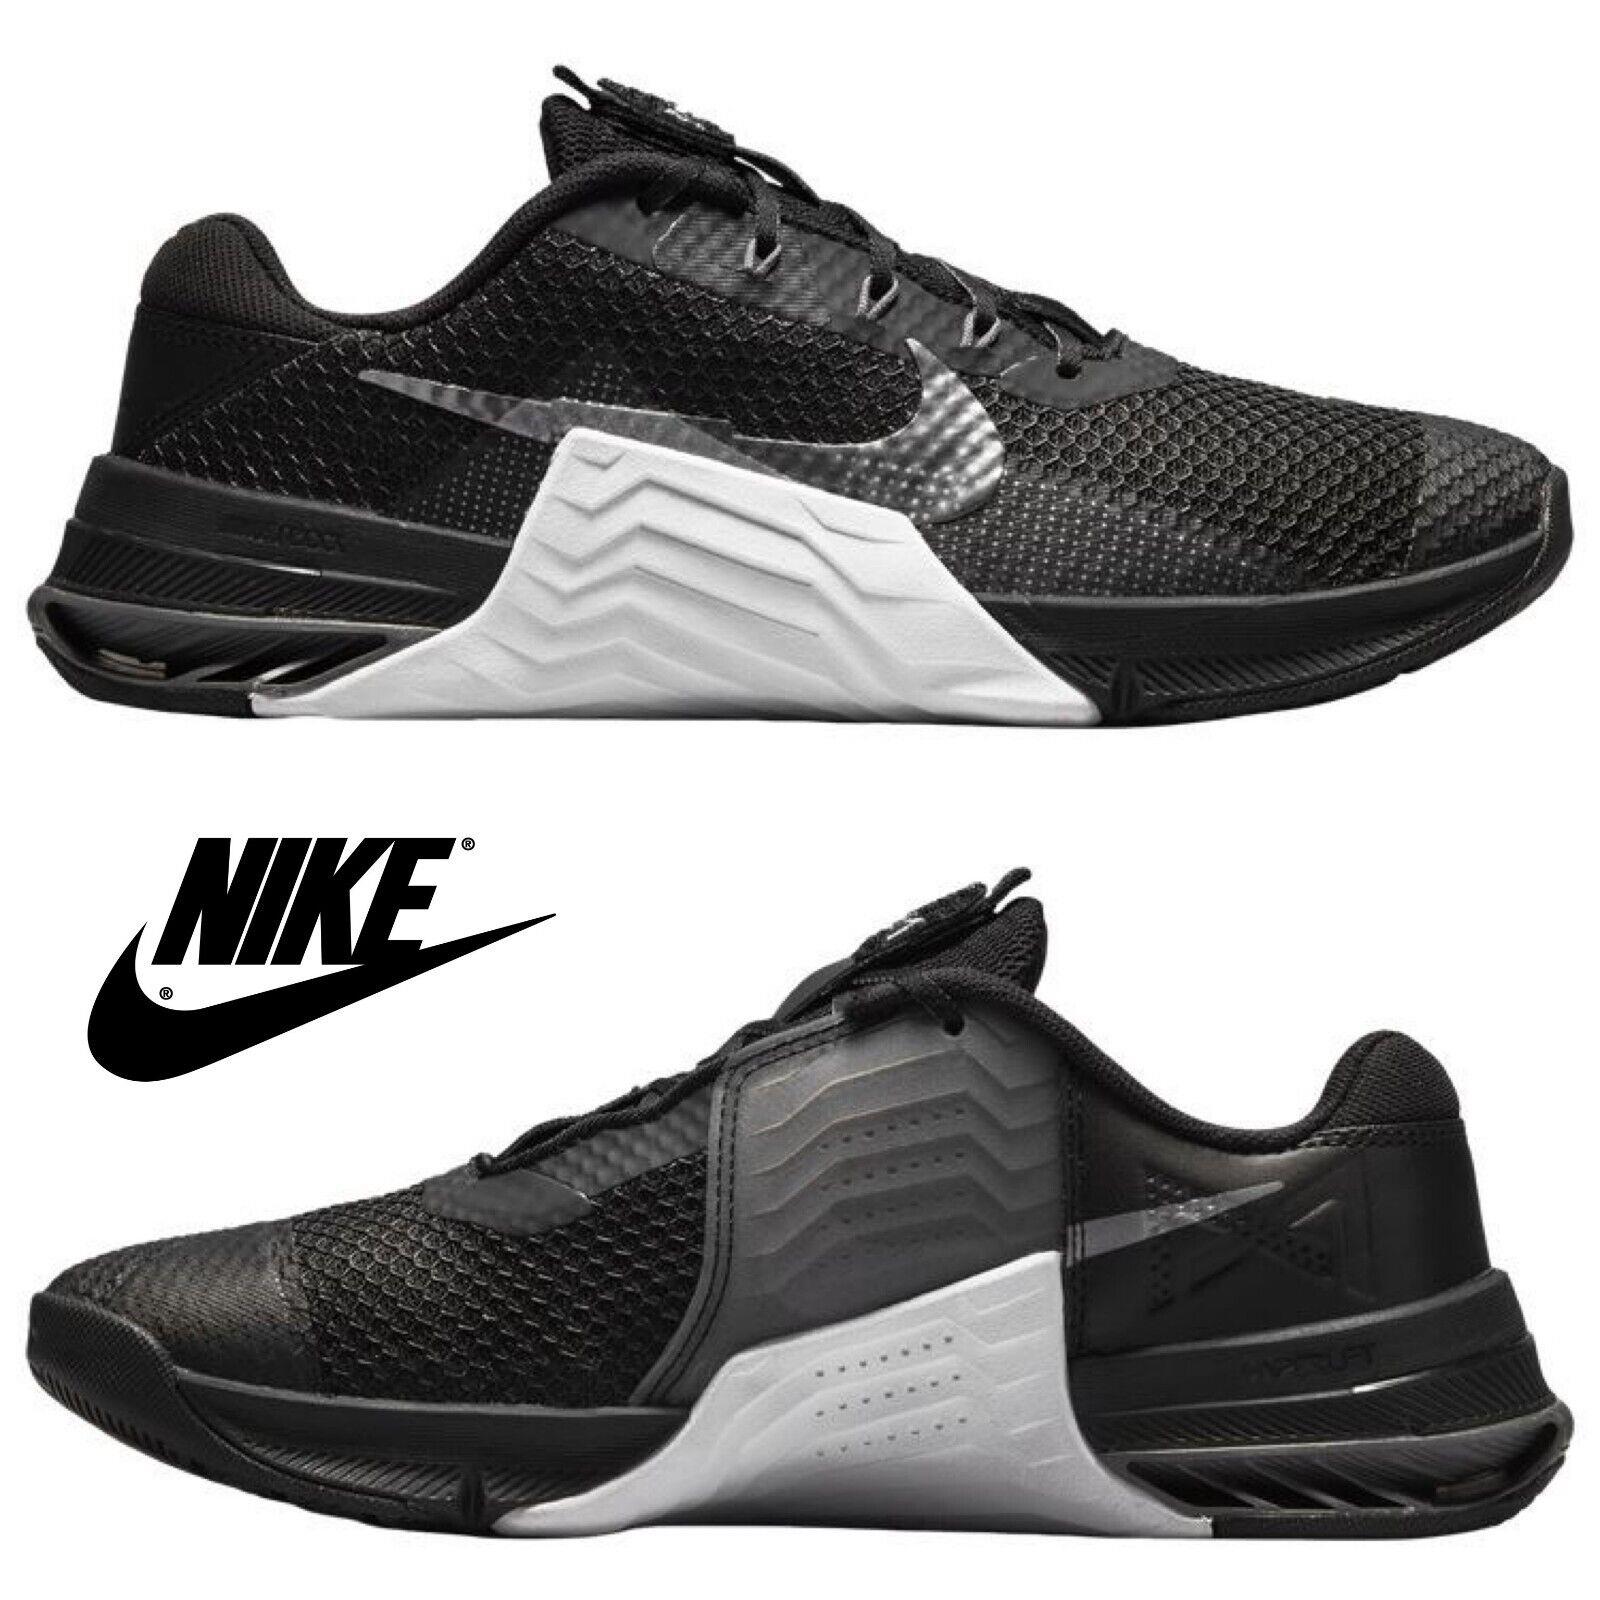 Nike Metcon 7 Women`s Running Shoes Casual Sneakers Walking Sport Gym Black - Black , Black/Metallic Dk Gray Manufacturer